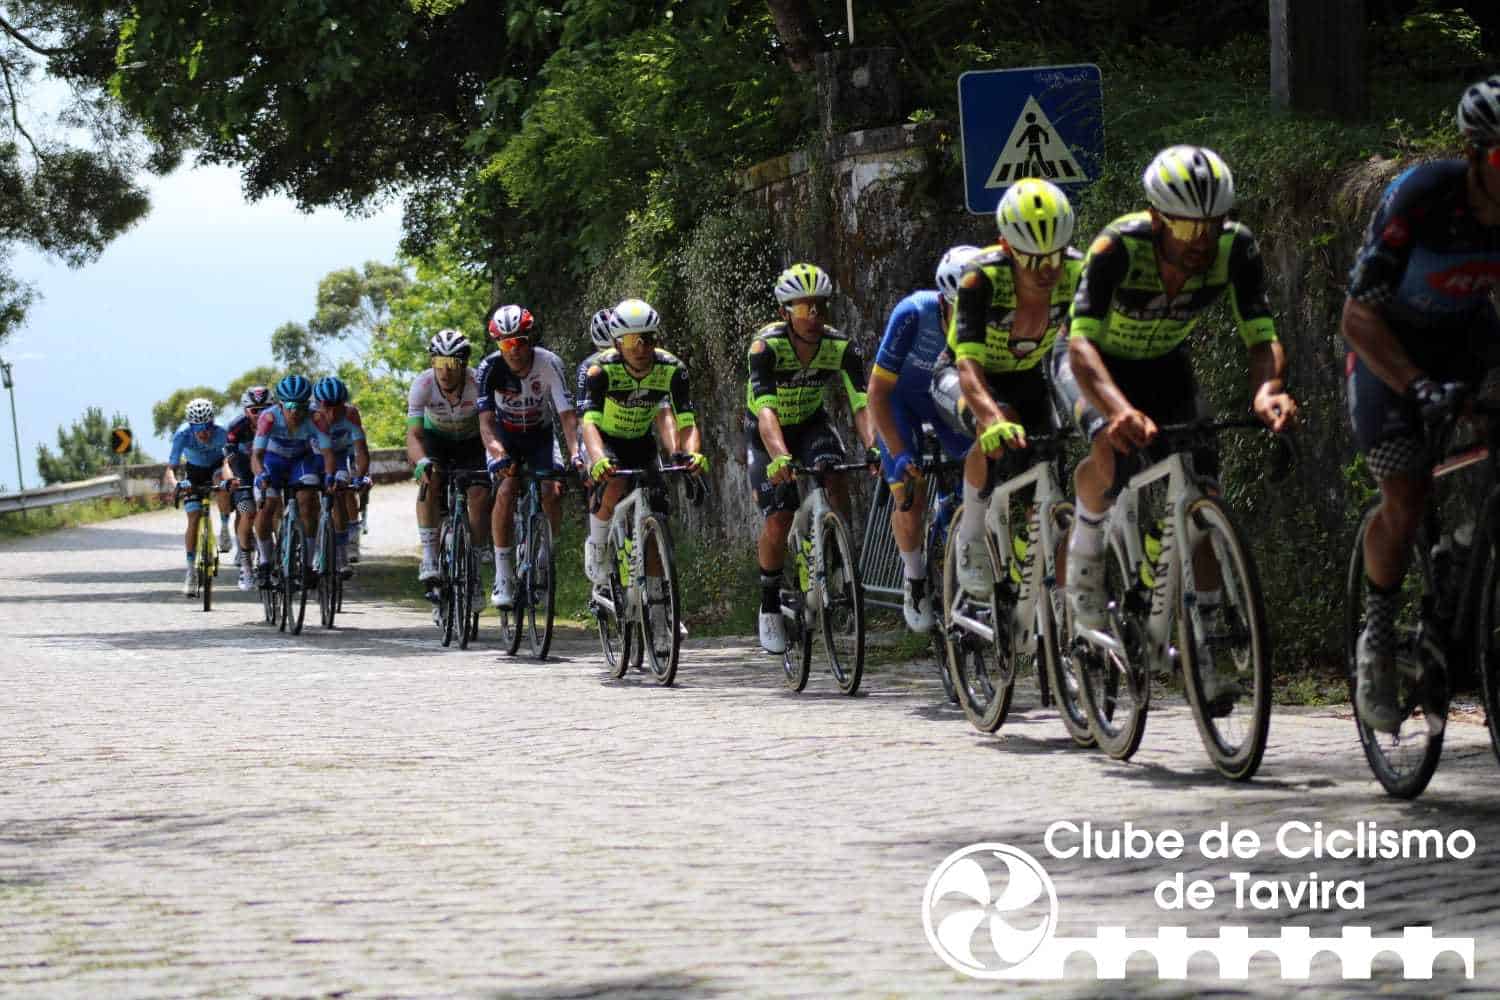 Clube de Ciclismo de Tavira - Classica Viana do Castelo31